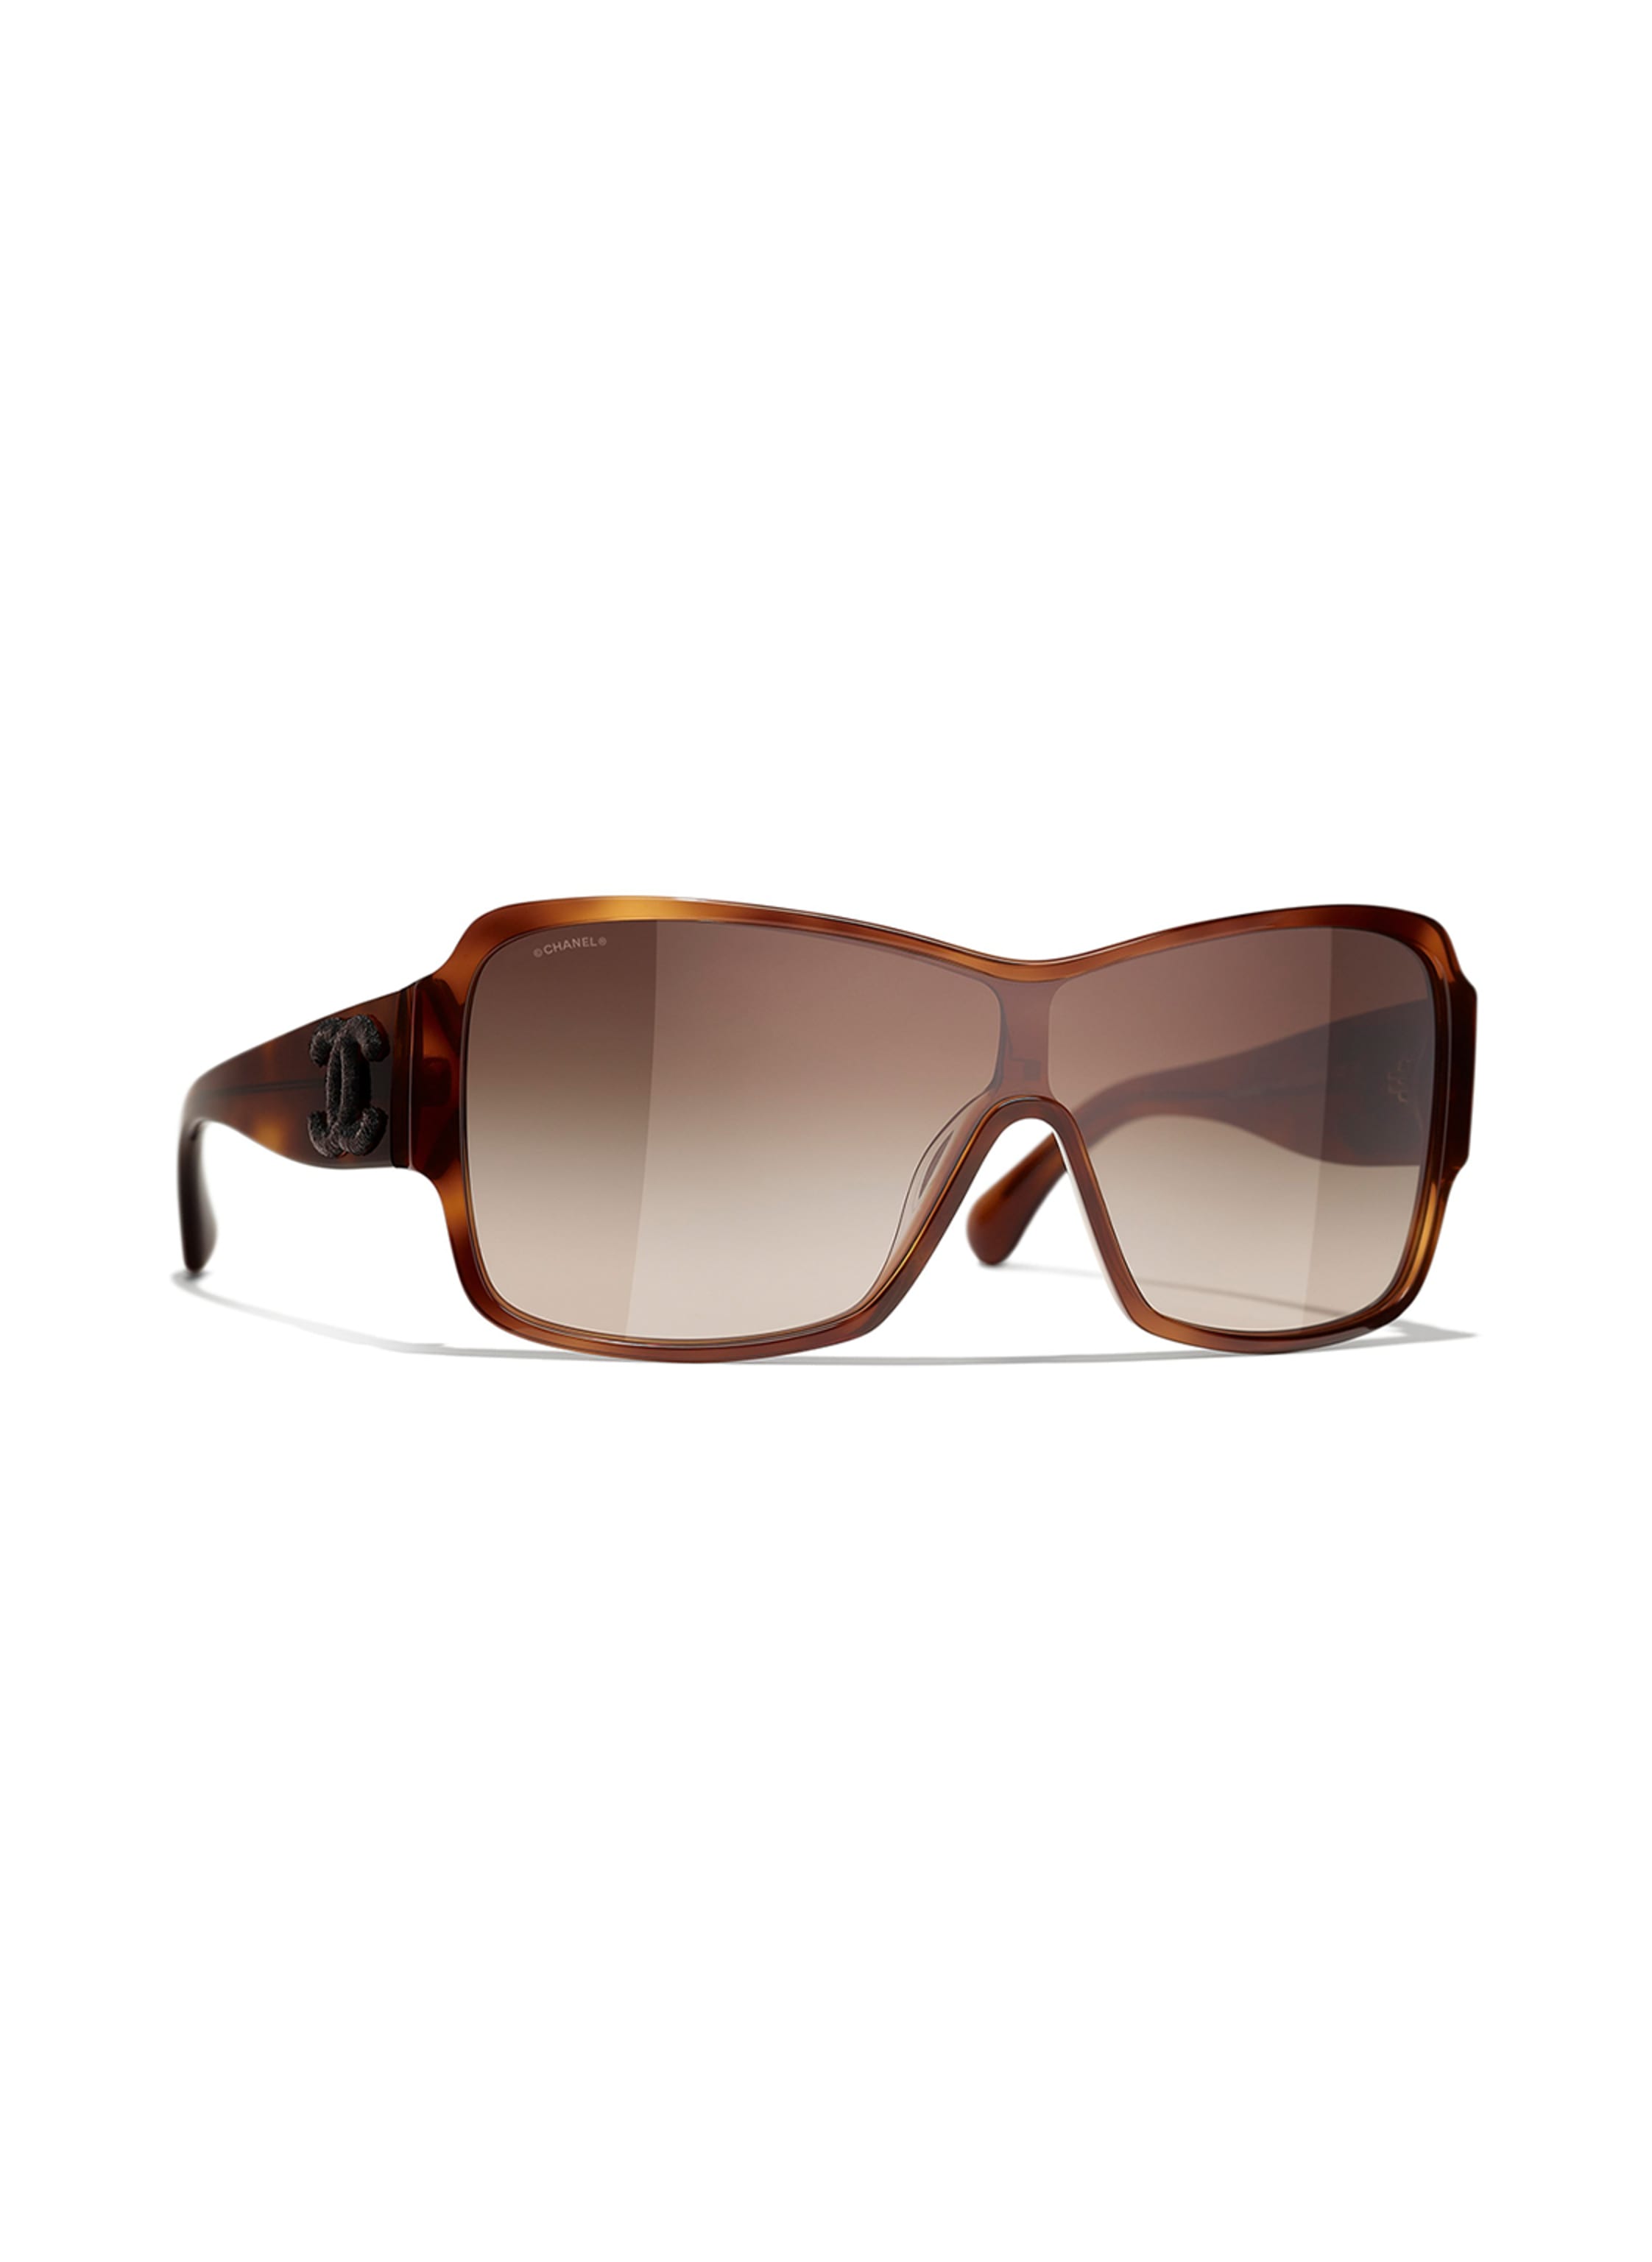 CHANEL  Accessories  Chanel Sunglasses Acetateblack Lenses Gray Polarized  Ref5484 C76s8  Poshmark